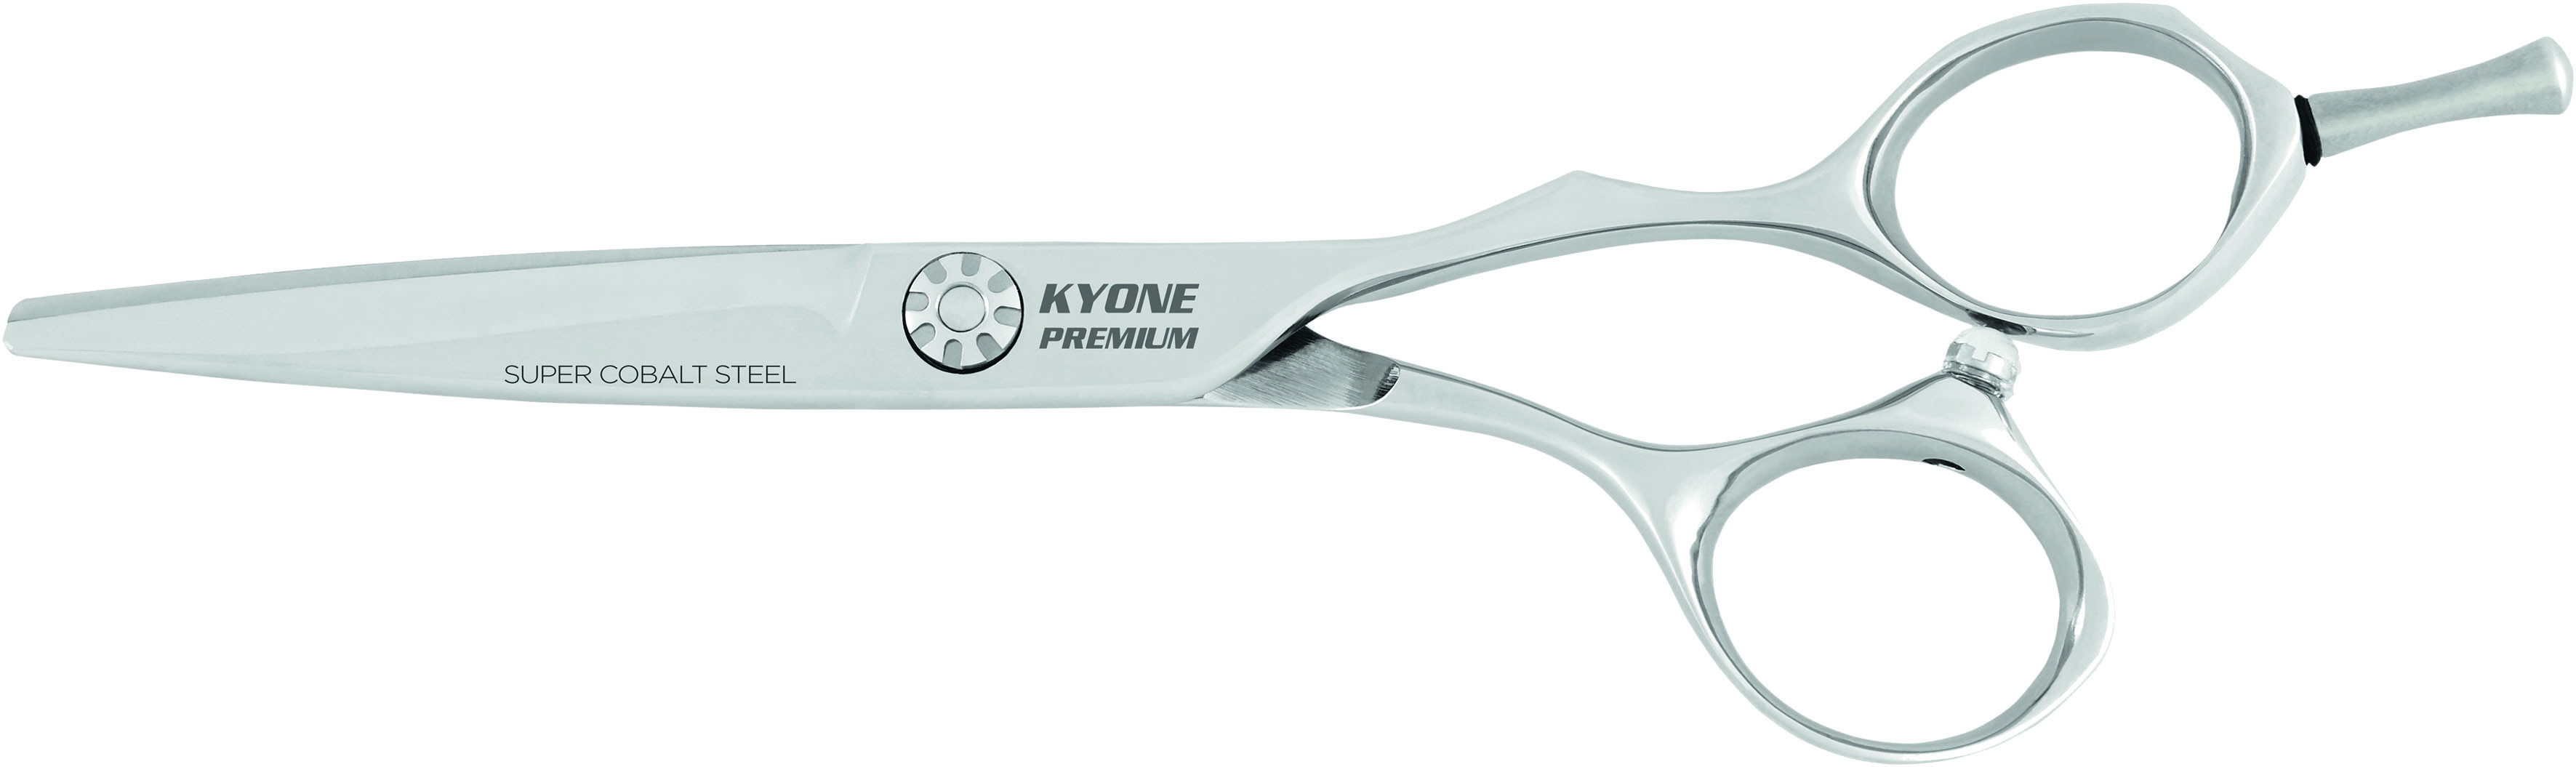 Kyone Premium Haarschneideschere 2600